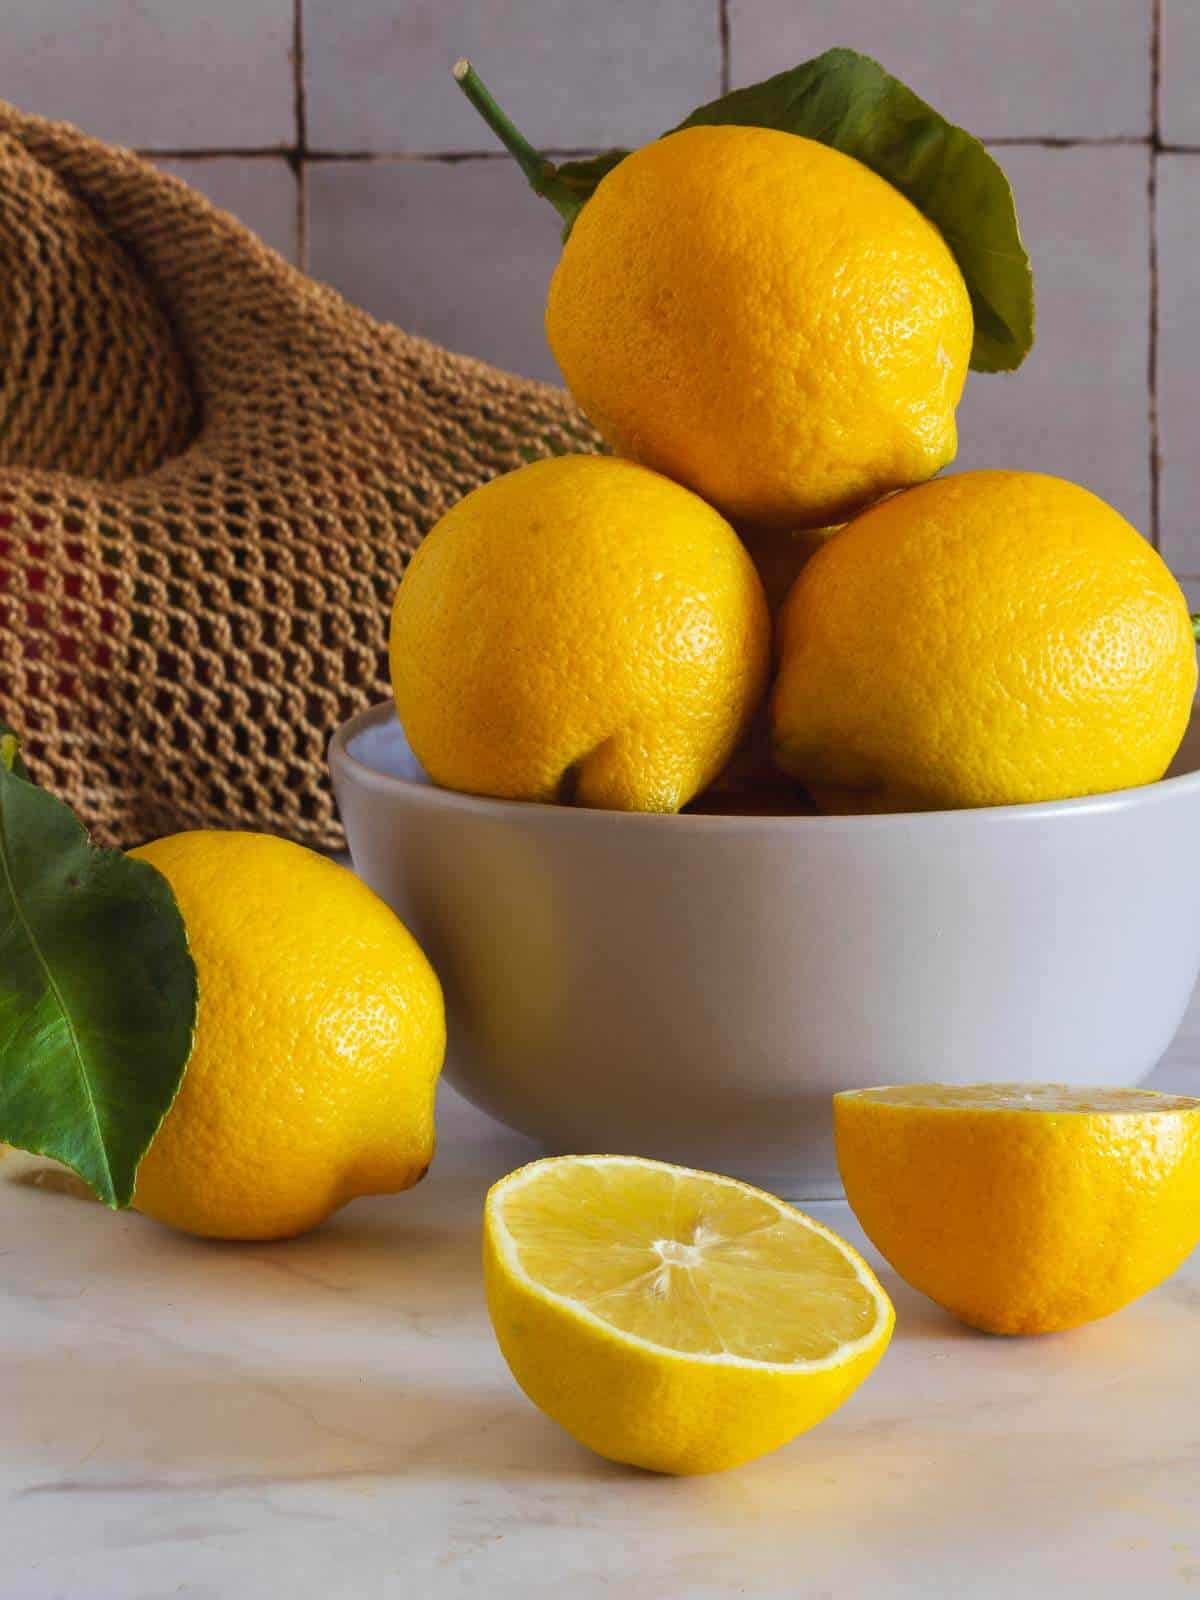 bowl con limones enteros junto a otro y dos mitades sobre la mesa.